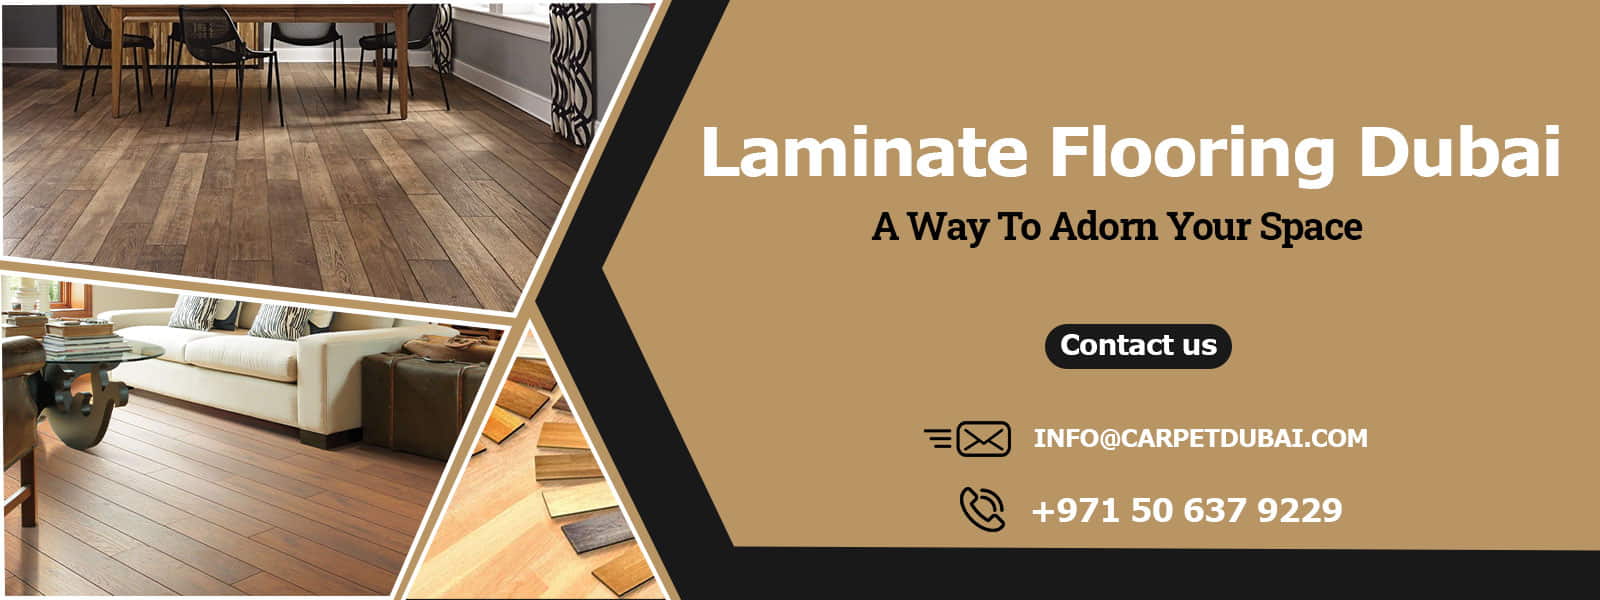 Laminate Flooring Dubai | Wood Finish Floors | UAE 2021